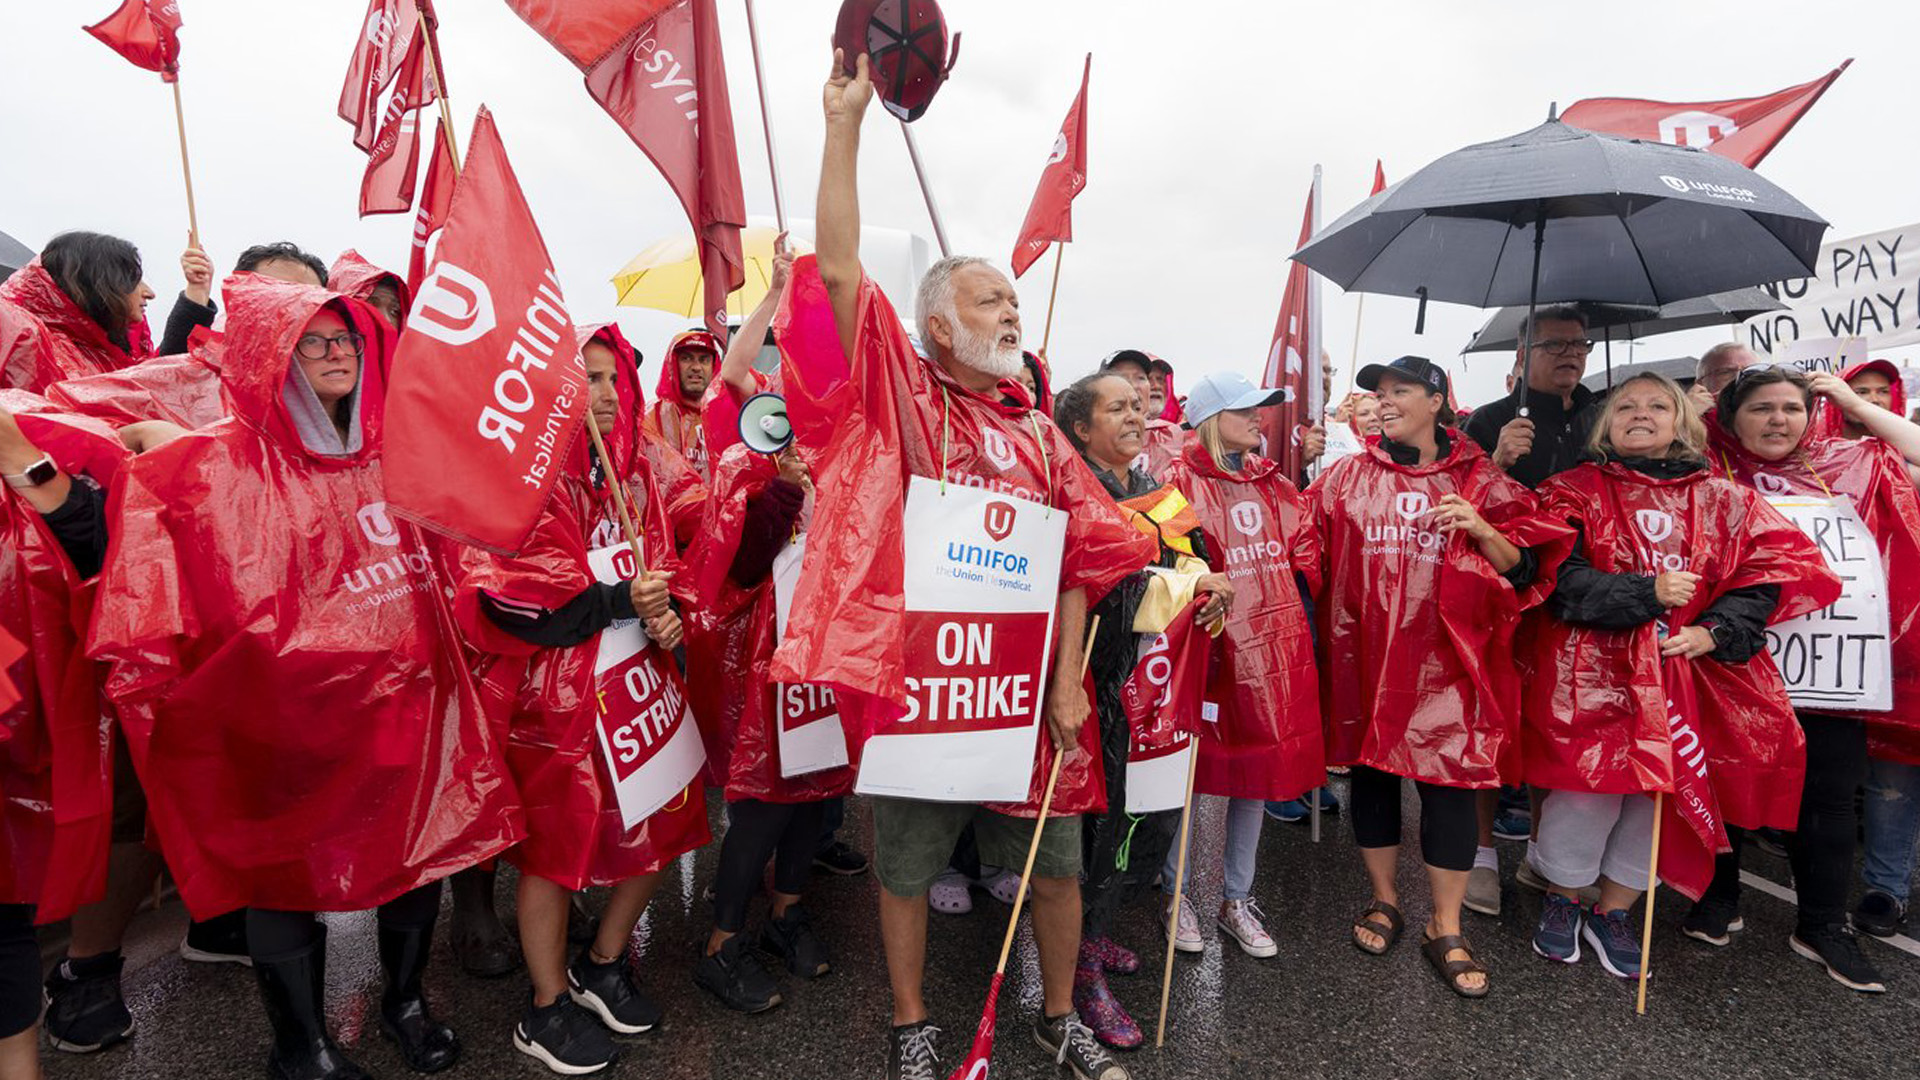 Un nouveau sondage de l'Institut Angus Reid révèle que pour plus de la moitié des Canadiens, le droit de grève l'emporte sur le risque de conséquences économiques. Des employés en grève de l'épicerie Metro sont vus sur une ligne de piquetage à Toronto, le mercredi 23 août 2023.